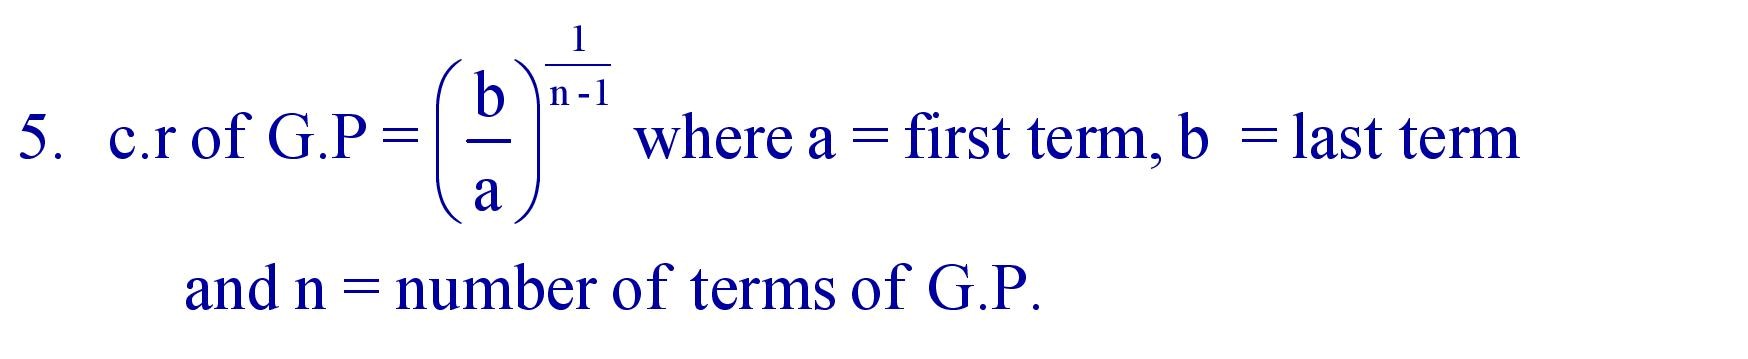 Common ratio of G.P